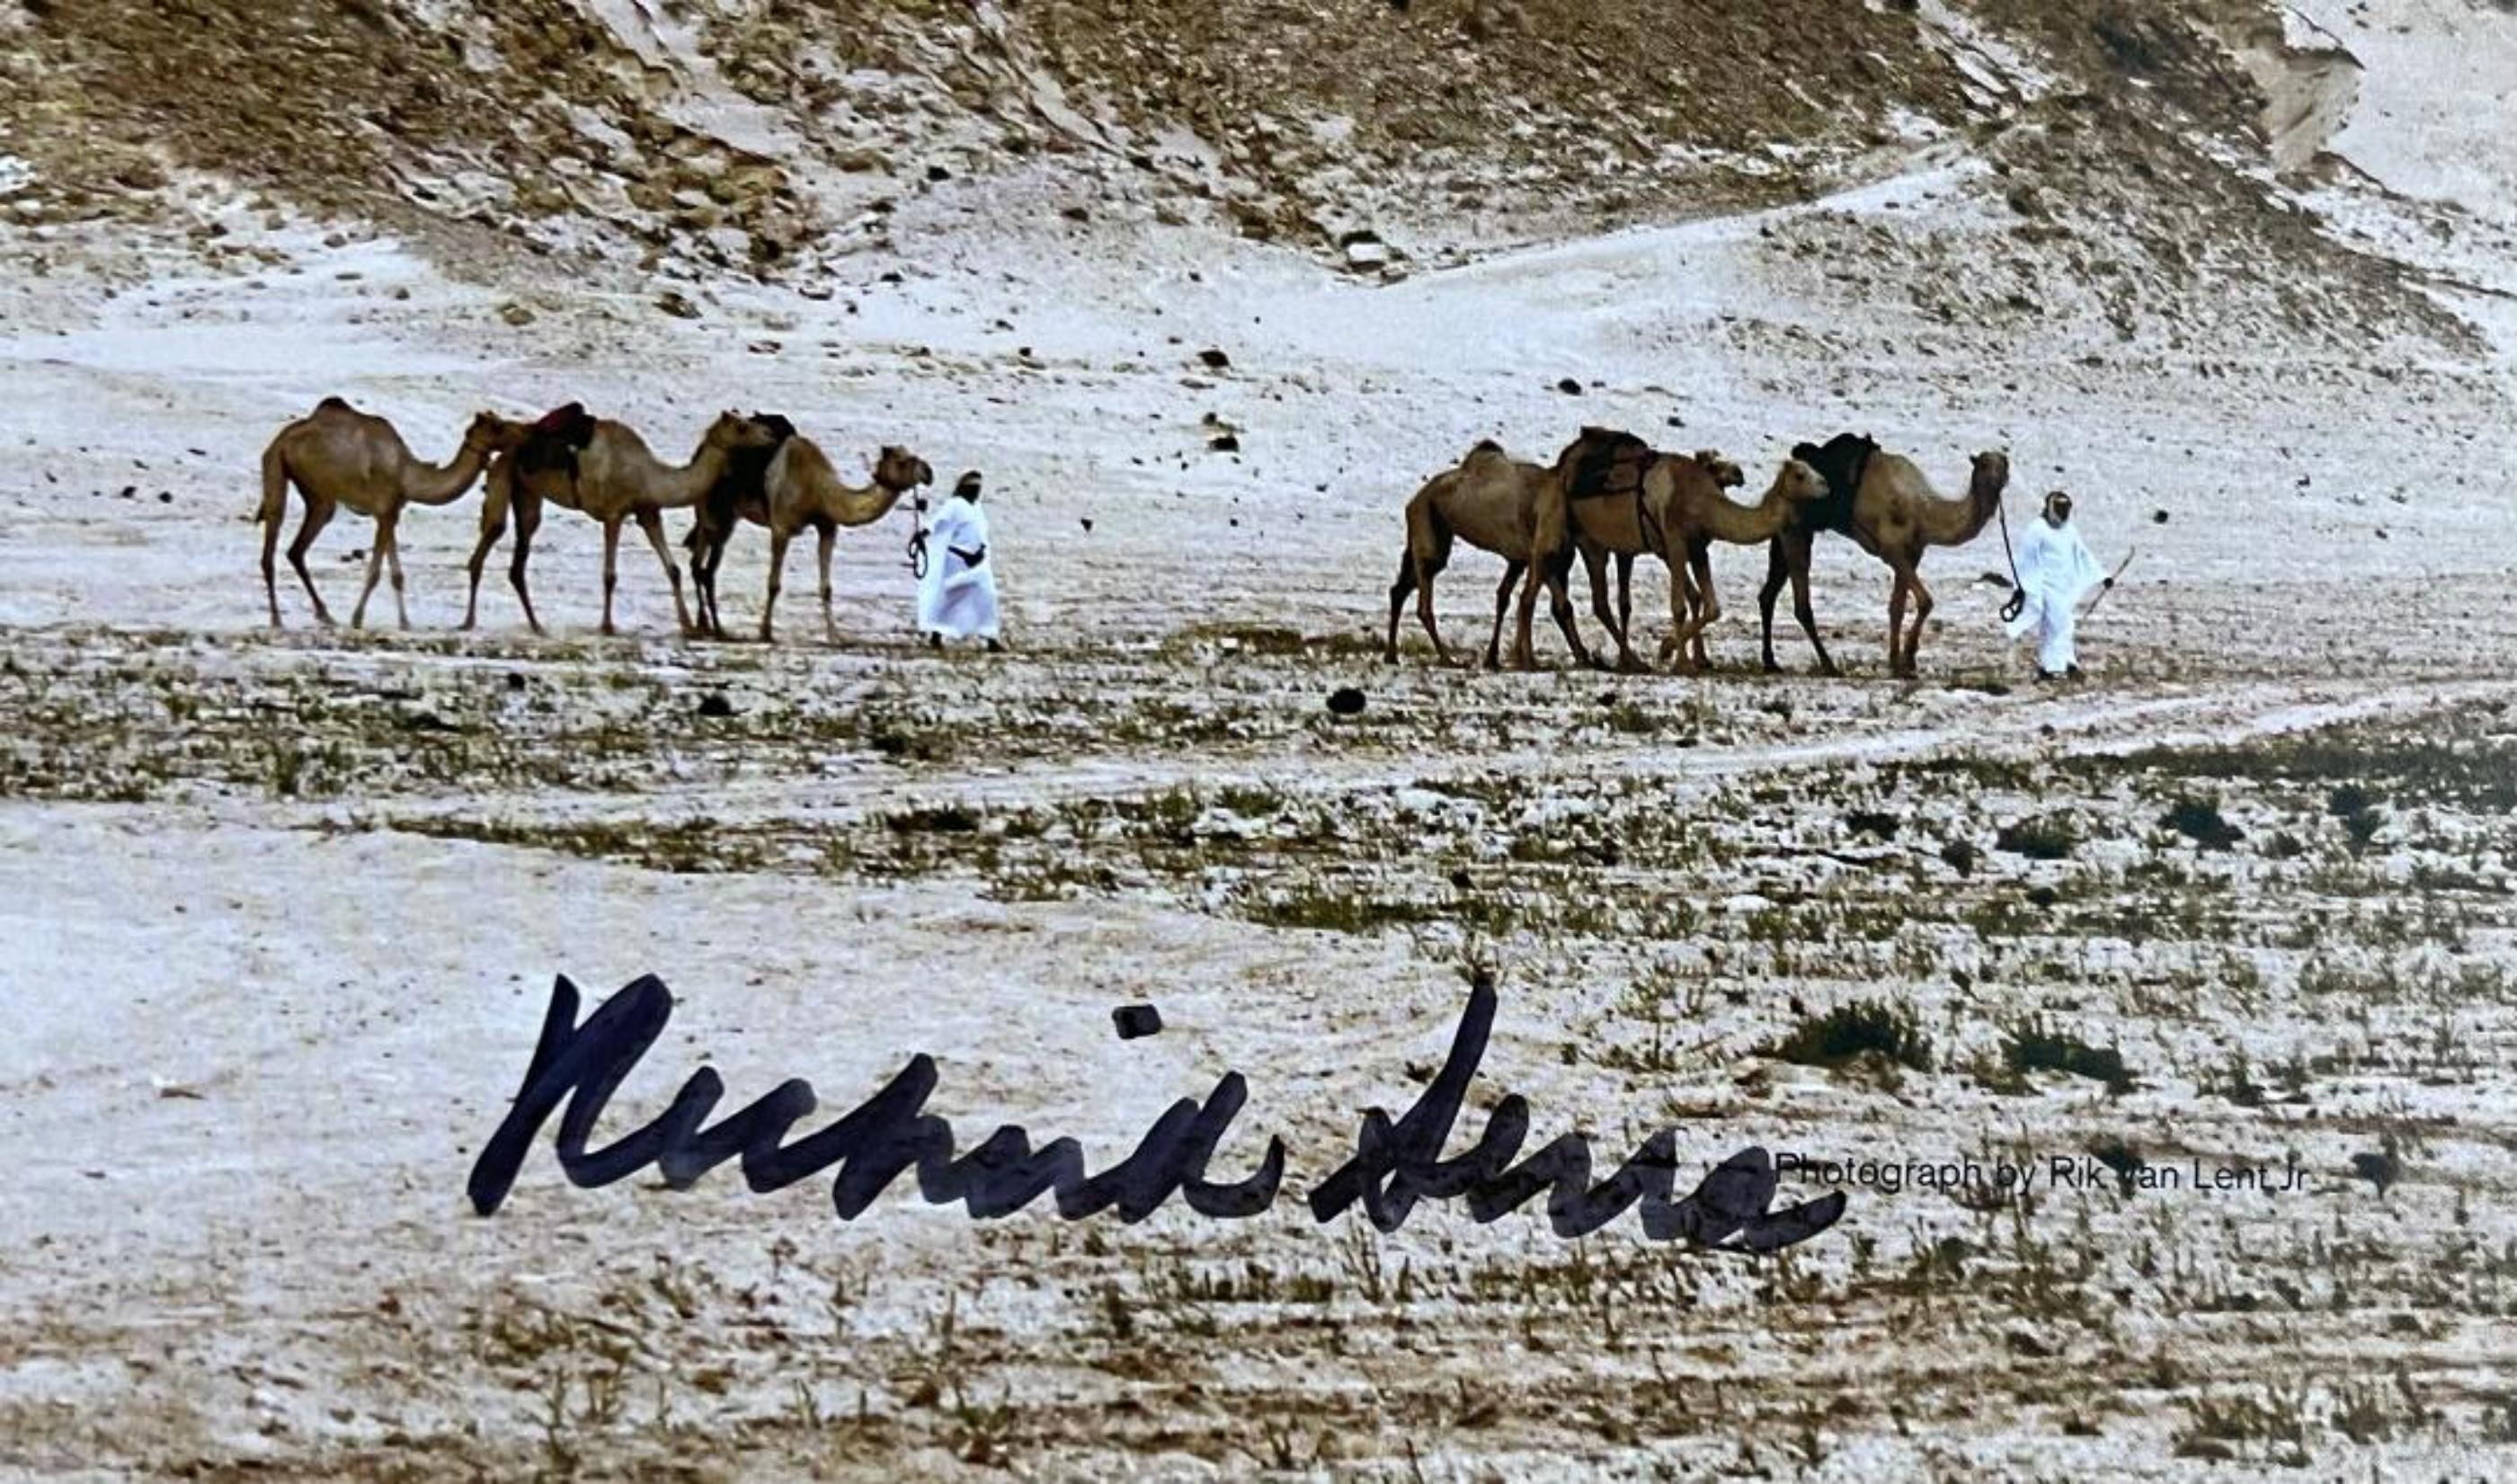 Richard Serra
Ost-West/West-Ost: A Permanent in the Brouq Nature Reserve, Katar (Handsigniert von Richard Serra), ca. 2014
Hervorragende Provenienz: Schenkung des Künstlers an eine bedeutende Organisation für zeitgenössische Kunst
Sehr seltene